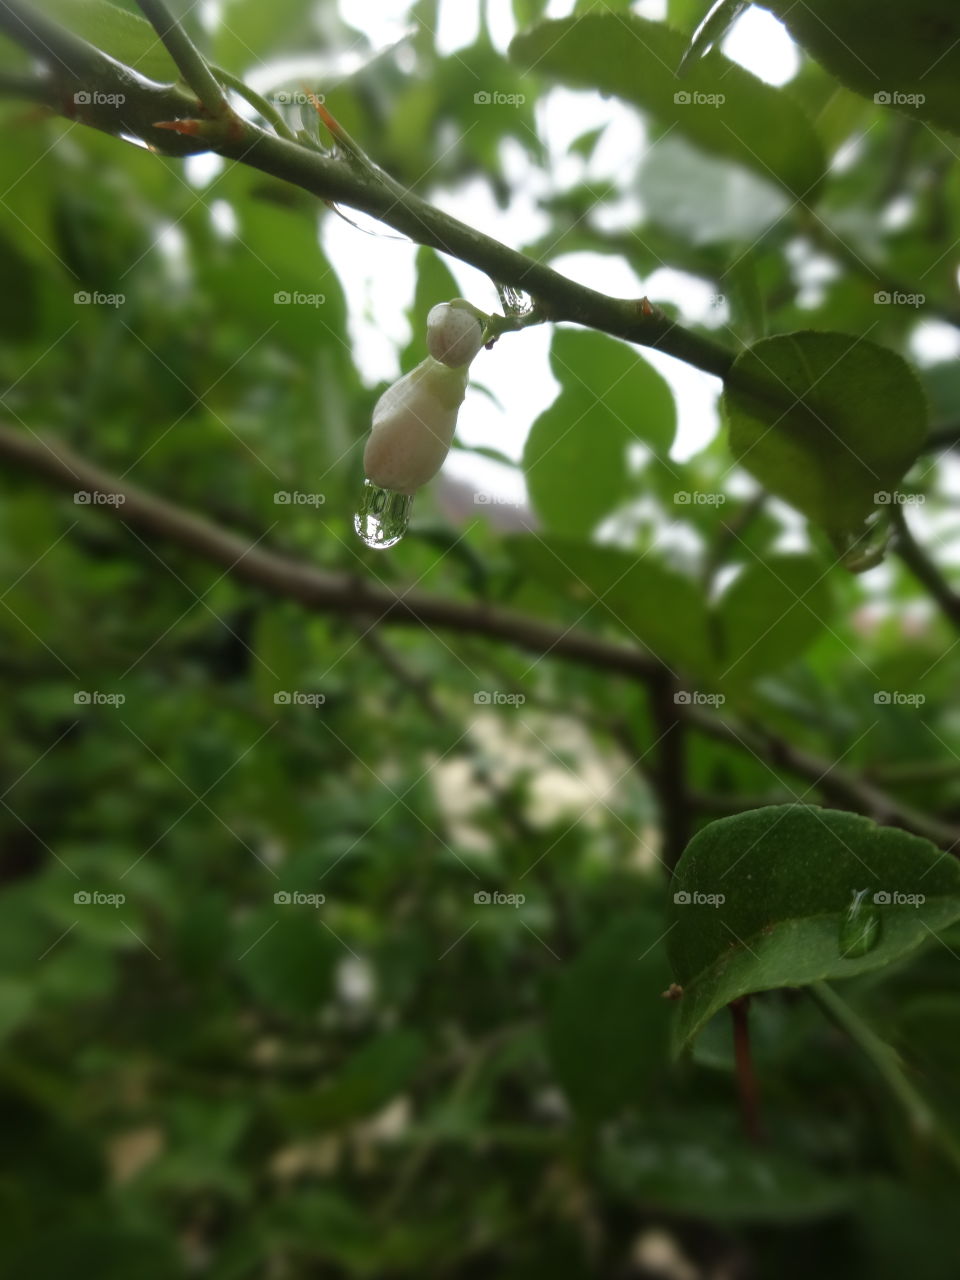 rain drops on lemon flower bud